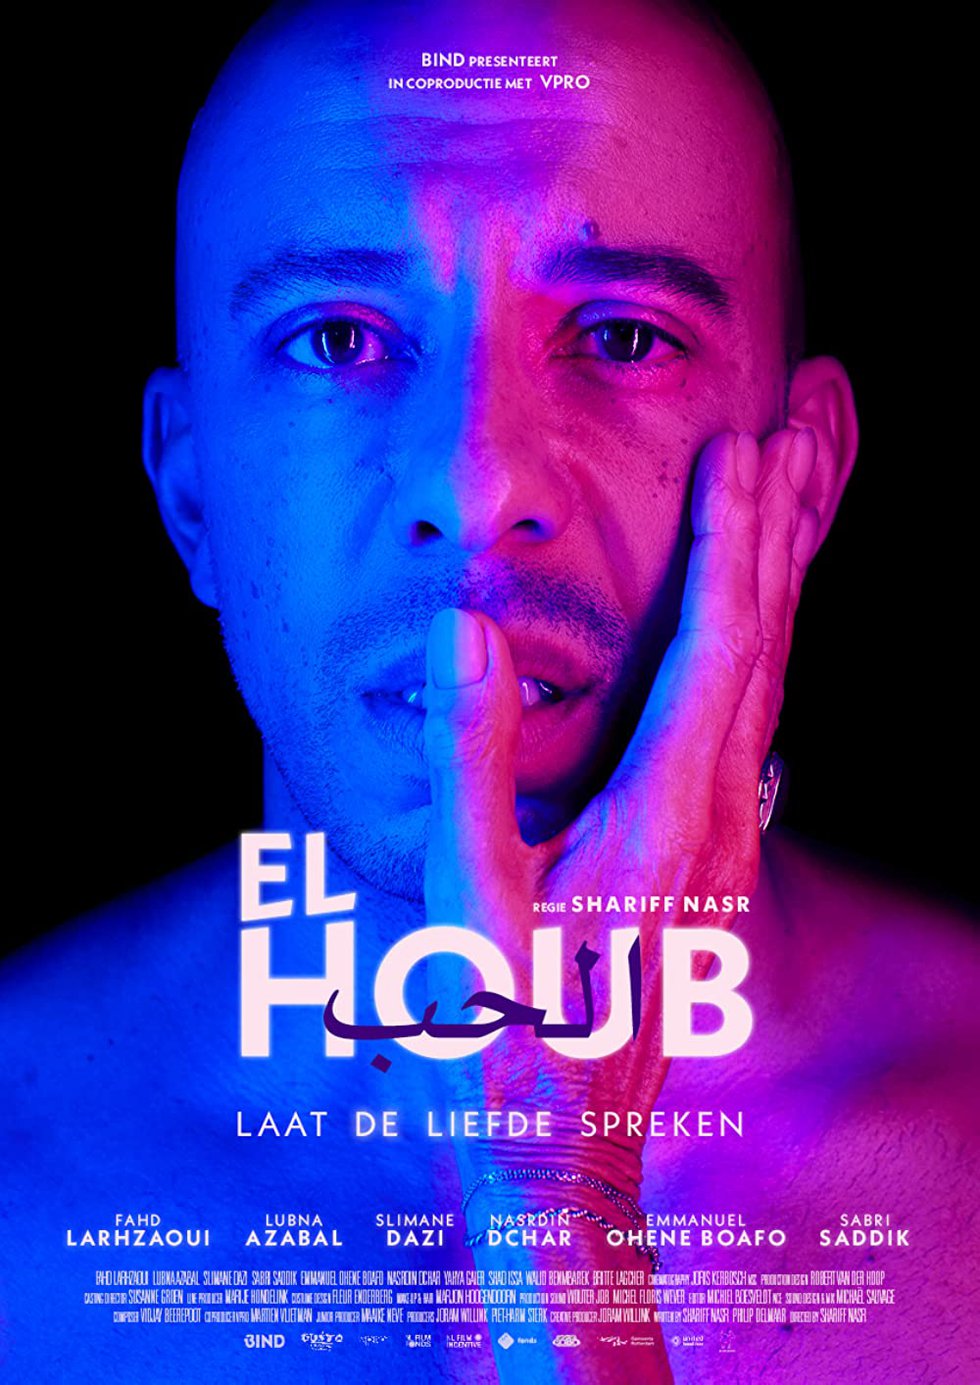 El Houb (The Love) LGBTQ Film